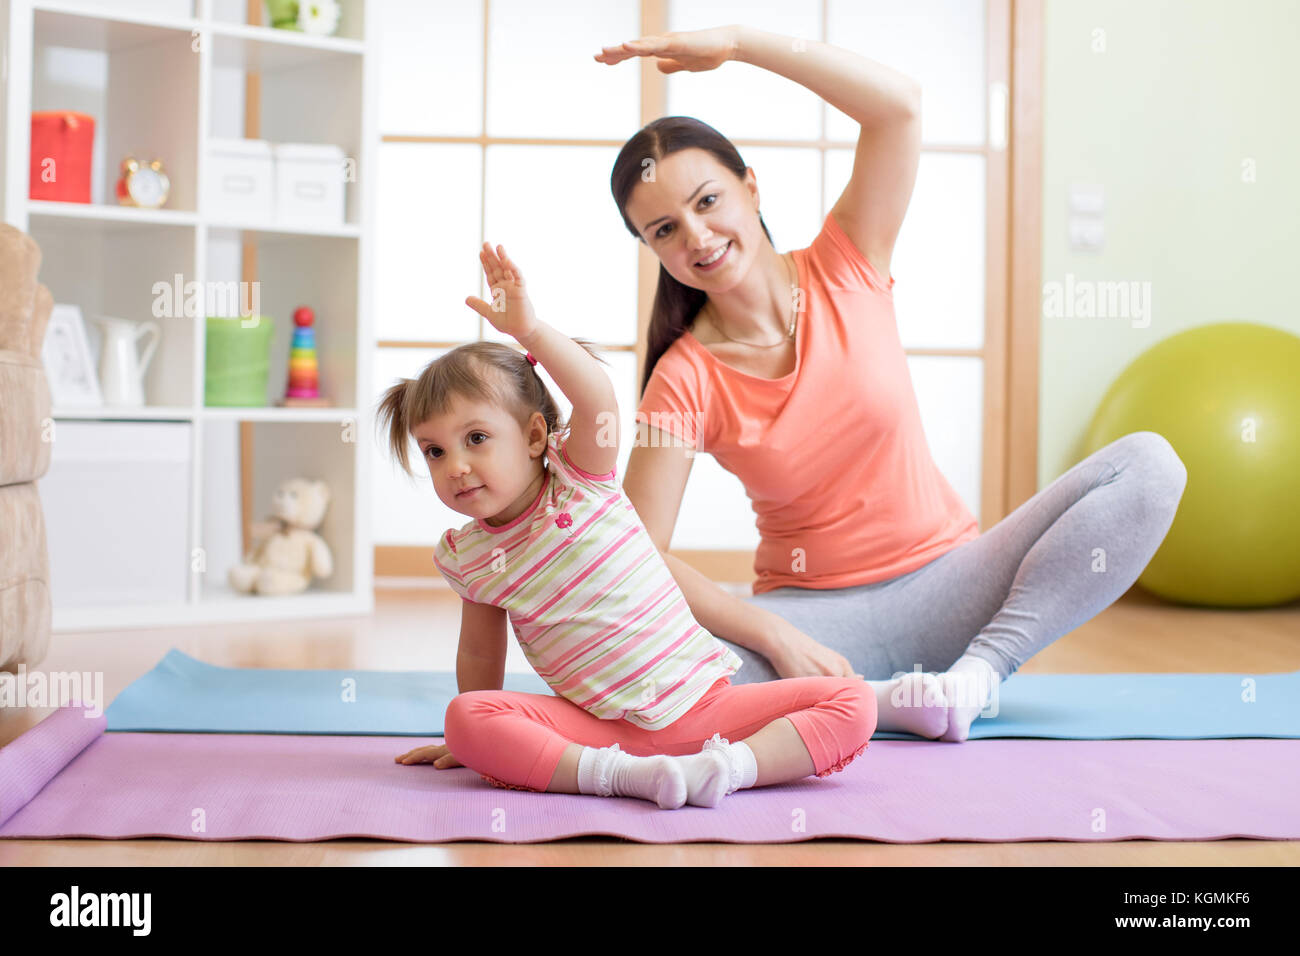 Mère et enfant fille active sont engagés dans fitness, yoga, l'exercice à la maison Banque D'Images